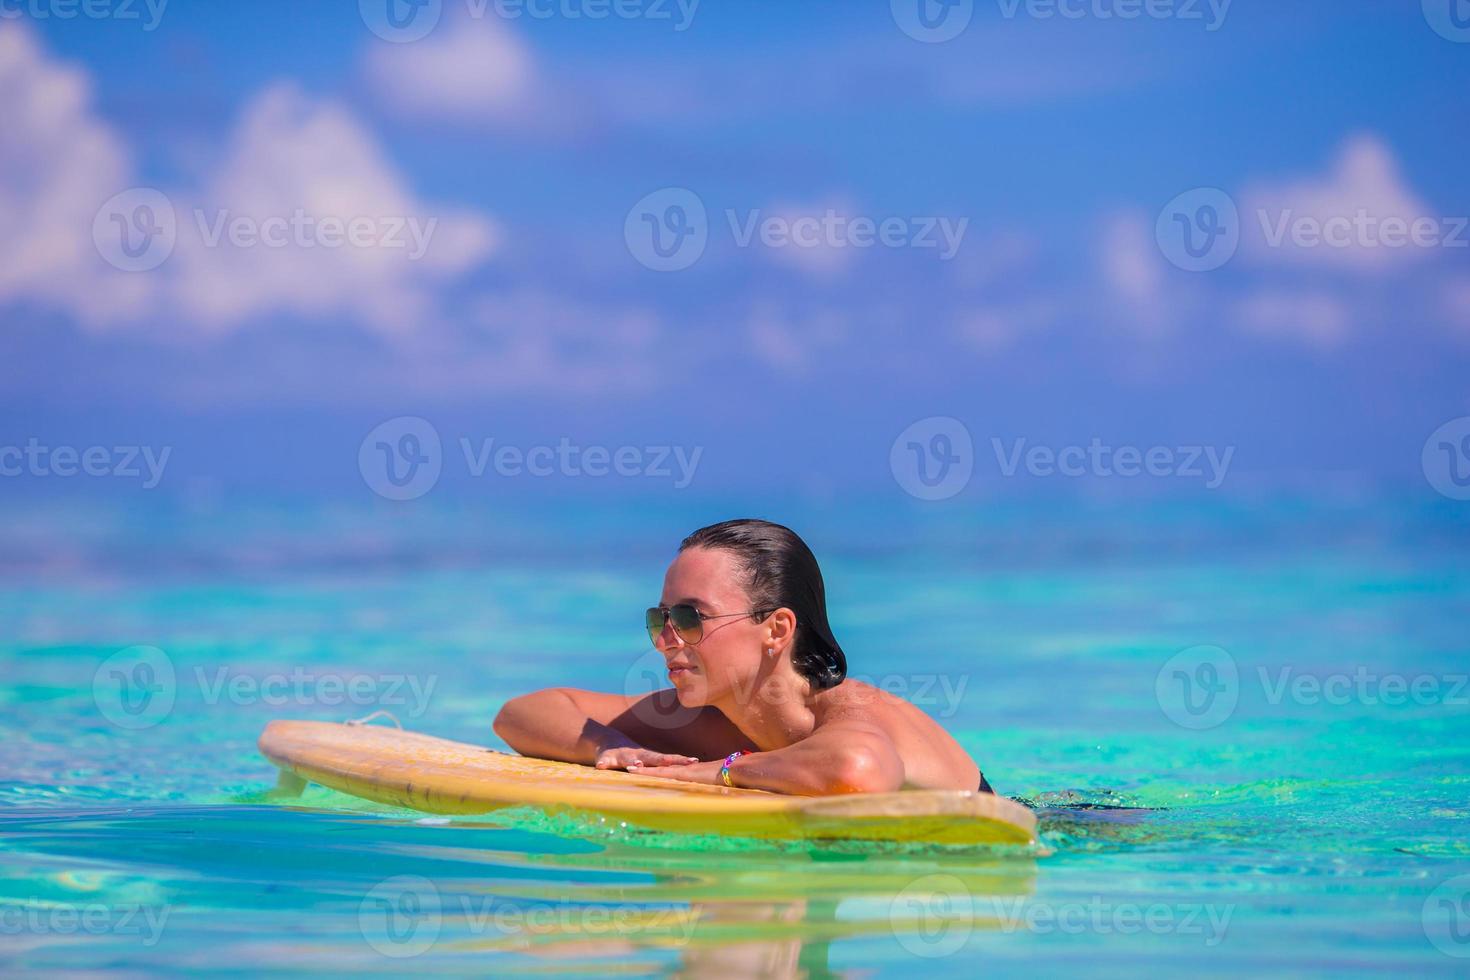 Belle surfeuse de remise en forme surfant pendant les vacances d'été photo